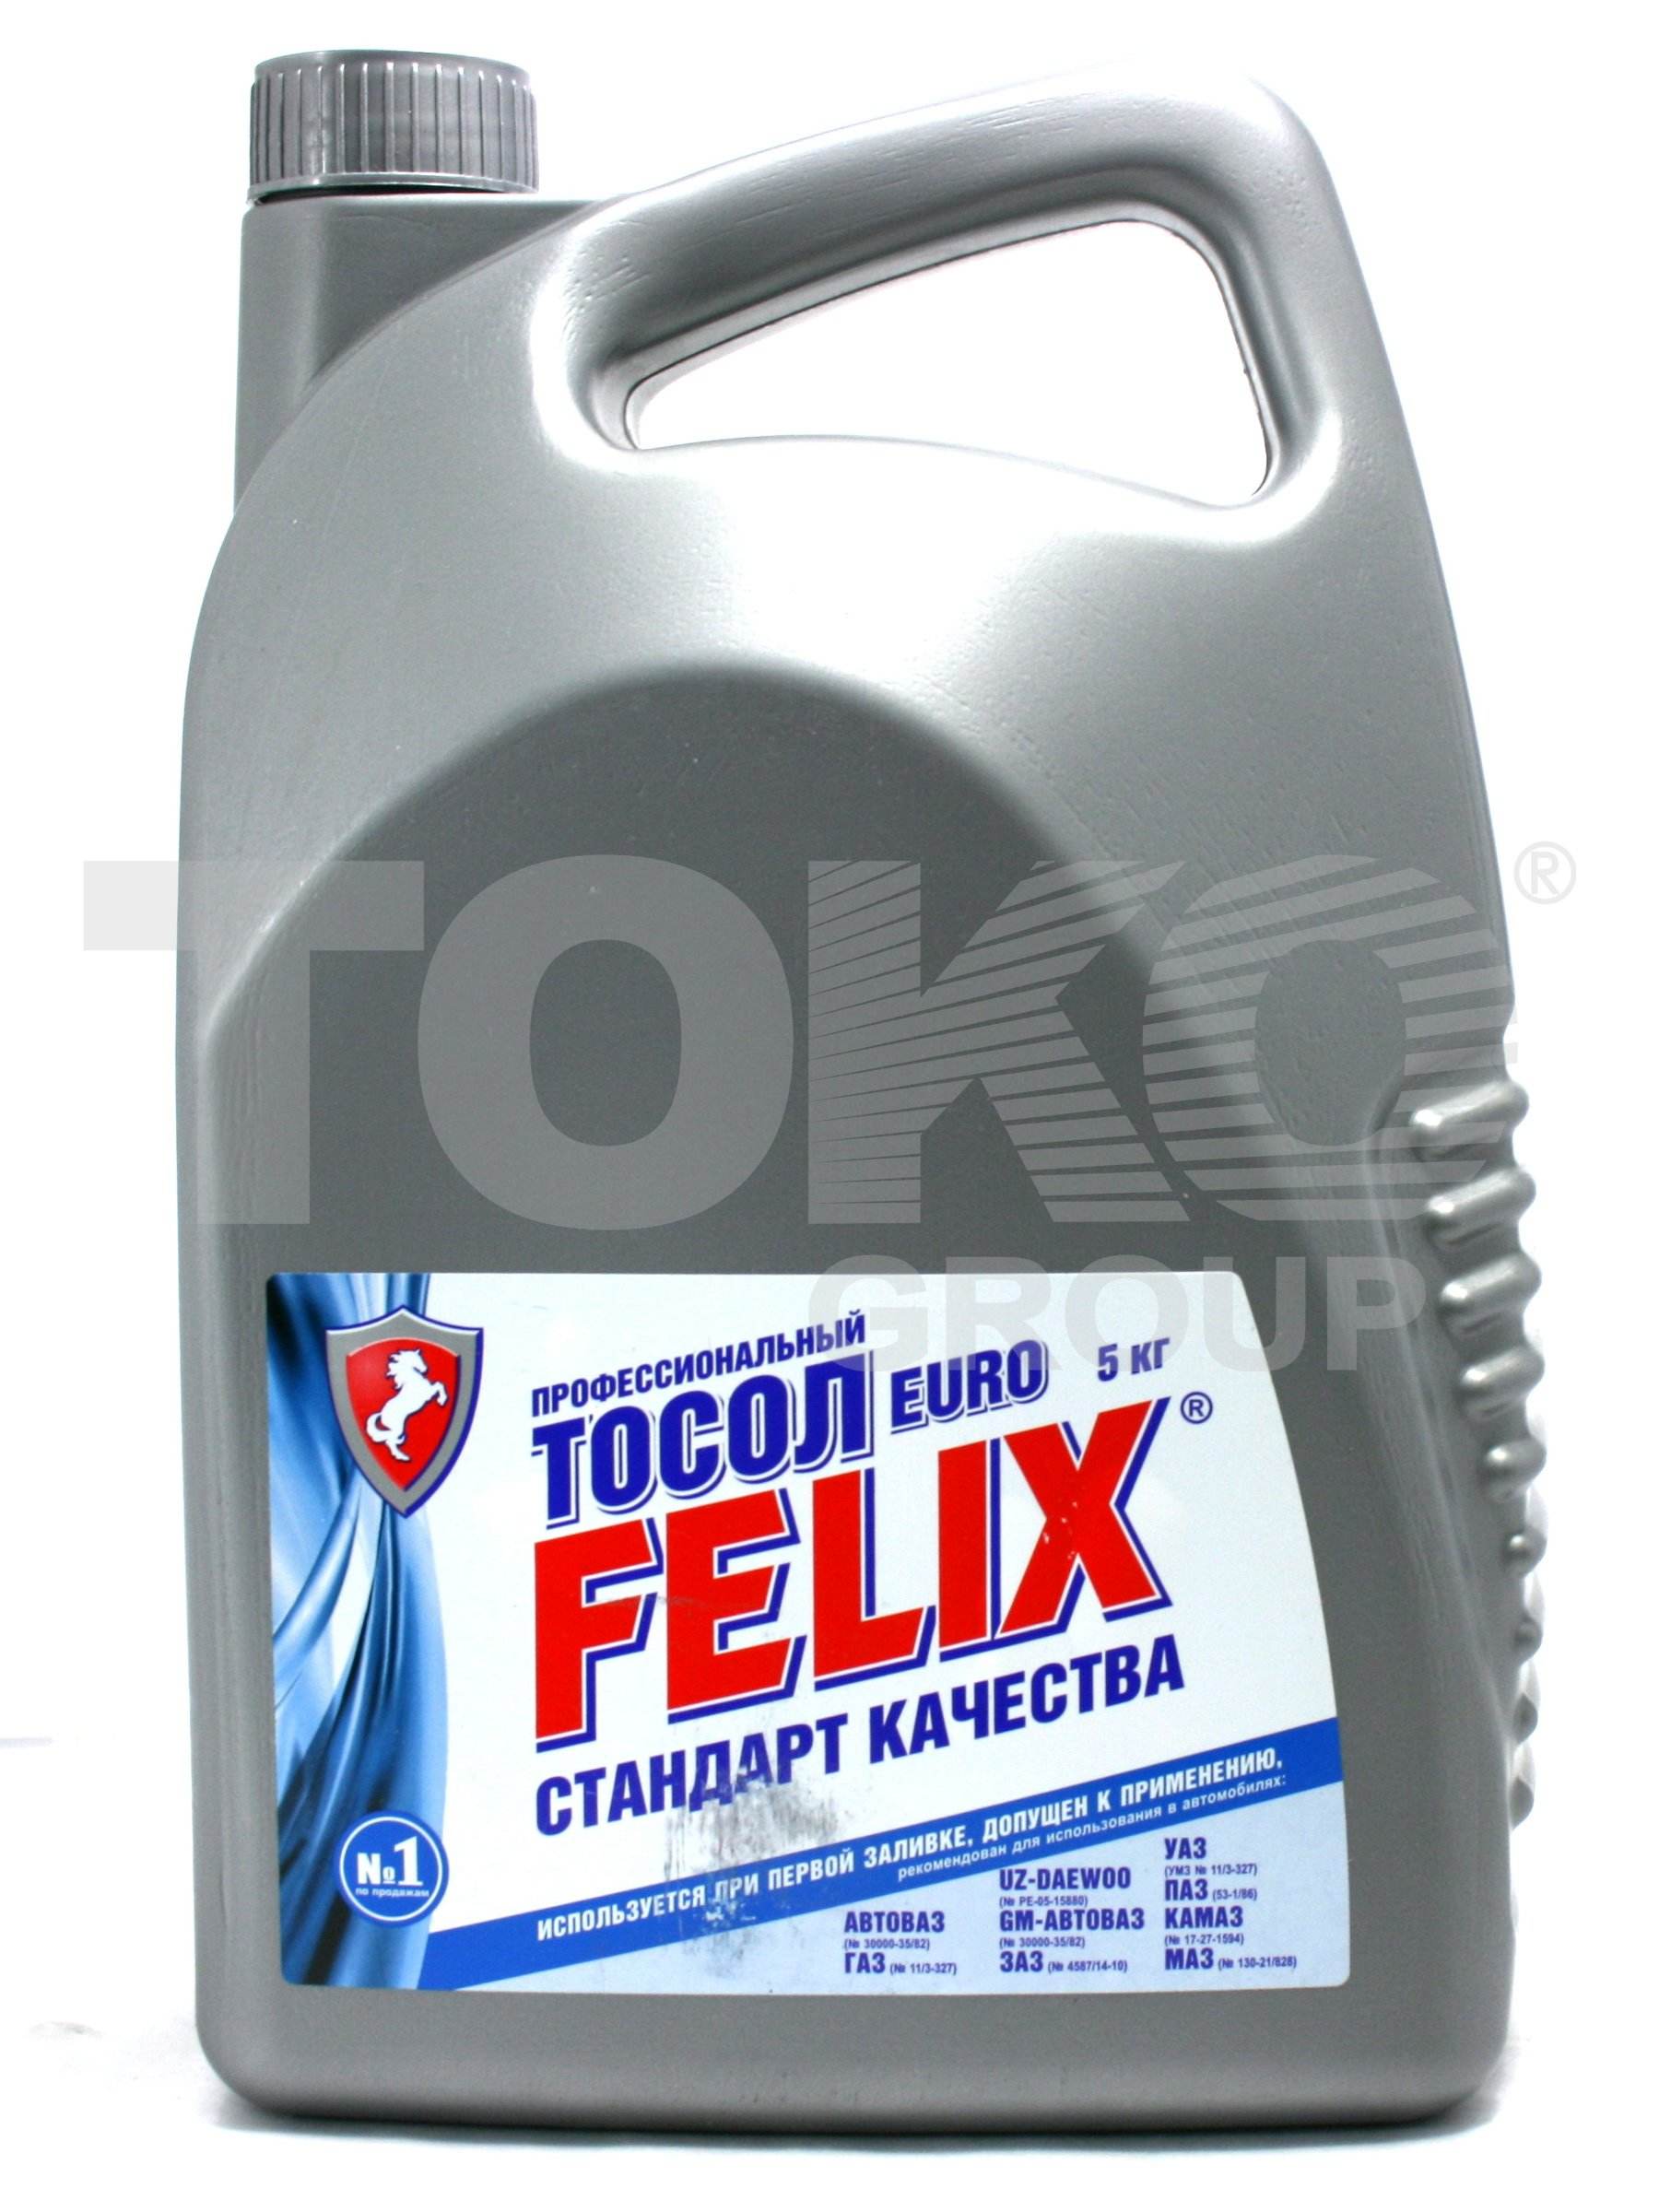 Тосол -35 FELIX FELIX 35 EURO Tosol 5kg - Фото #1